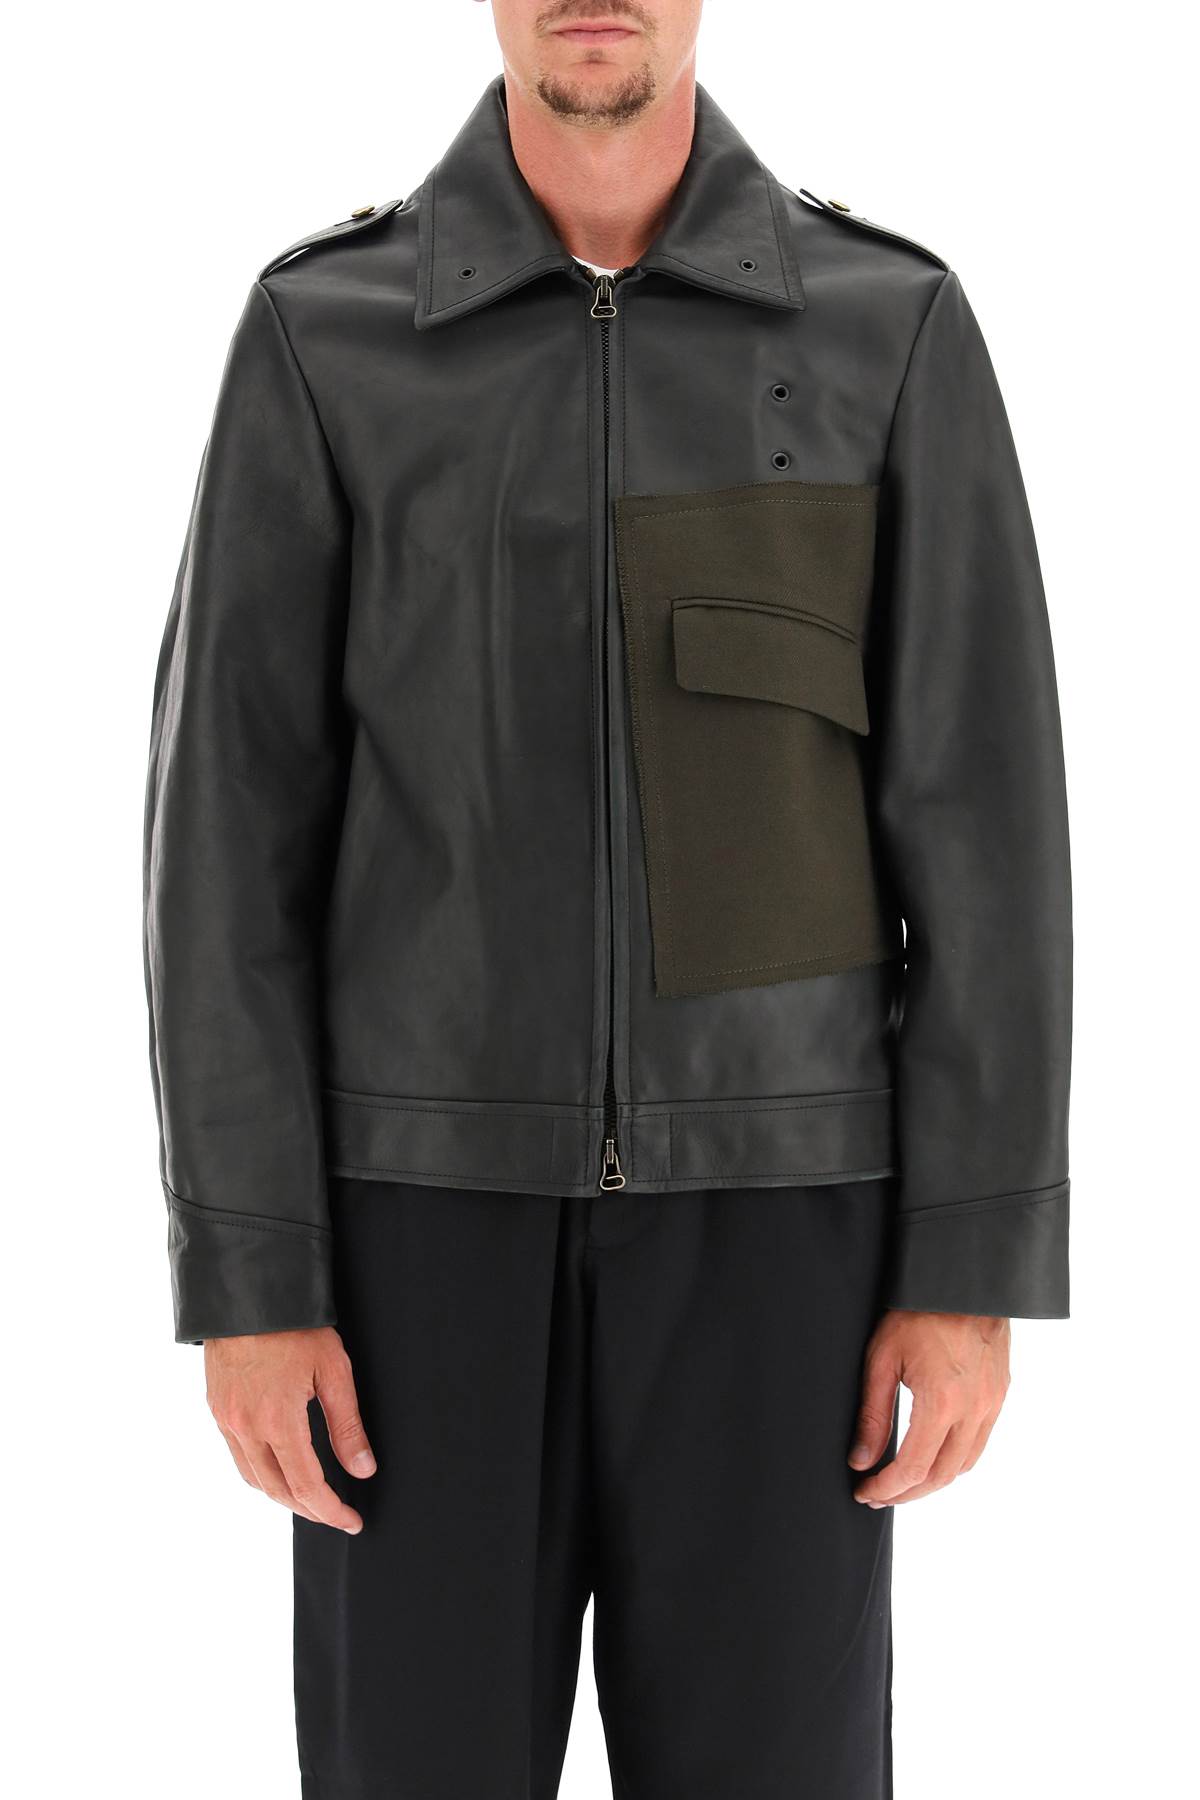 Maison Margiela Leather Jacket With Wool Pocket